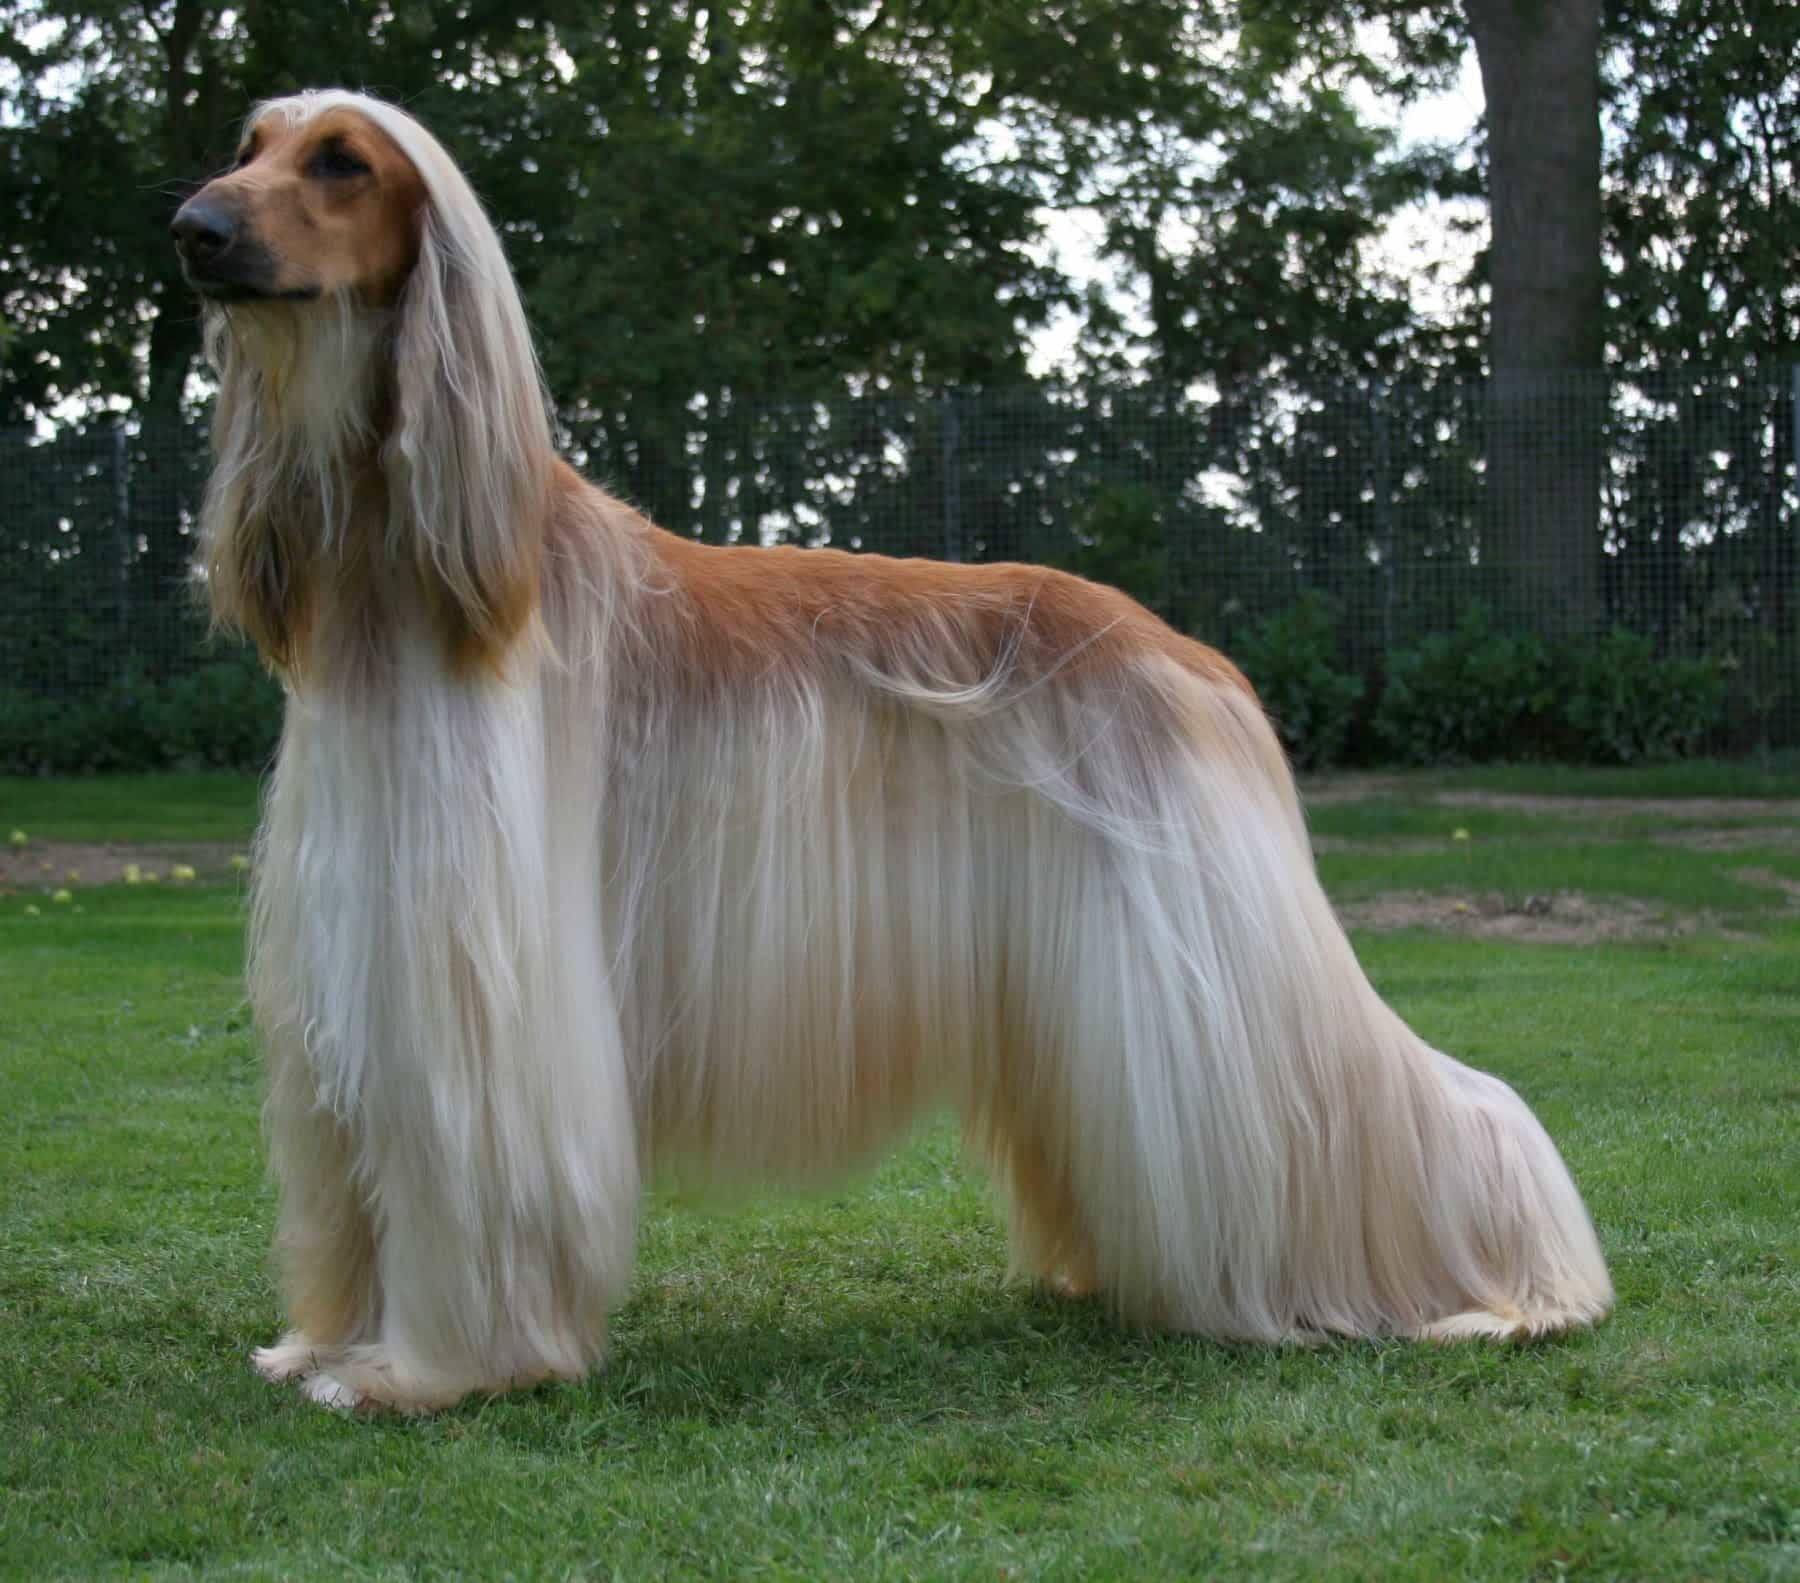 Sở hữu bộ lông mềm mại trải dài như
thác nước, những chú chó Afghan khiến bất kỳ
ai cũng phải thích thú khi ngắm nhìn chúng.